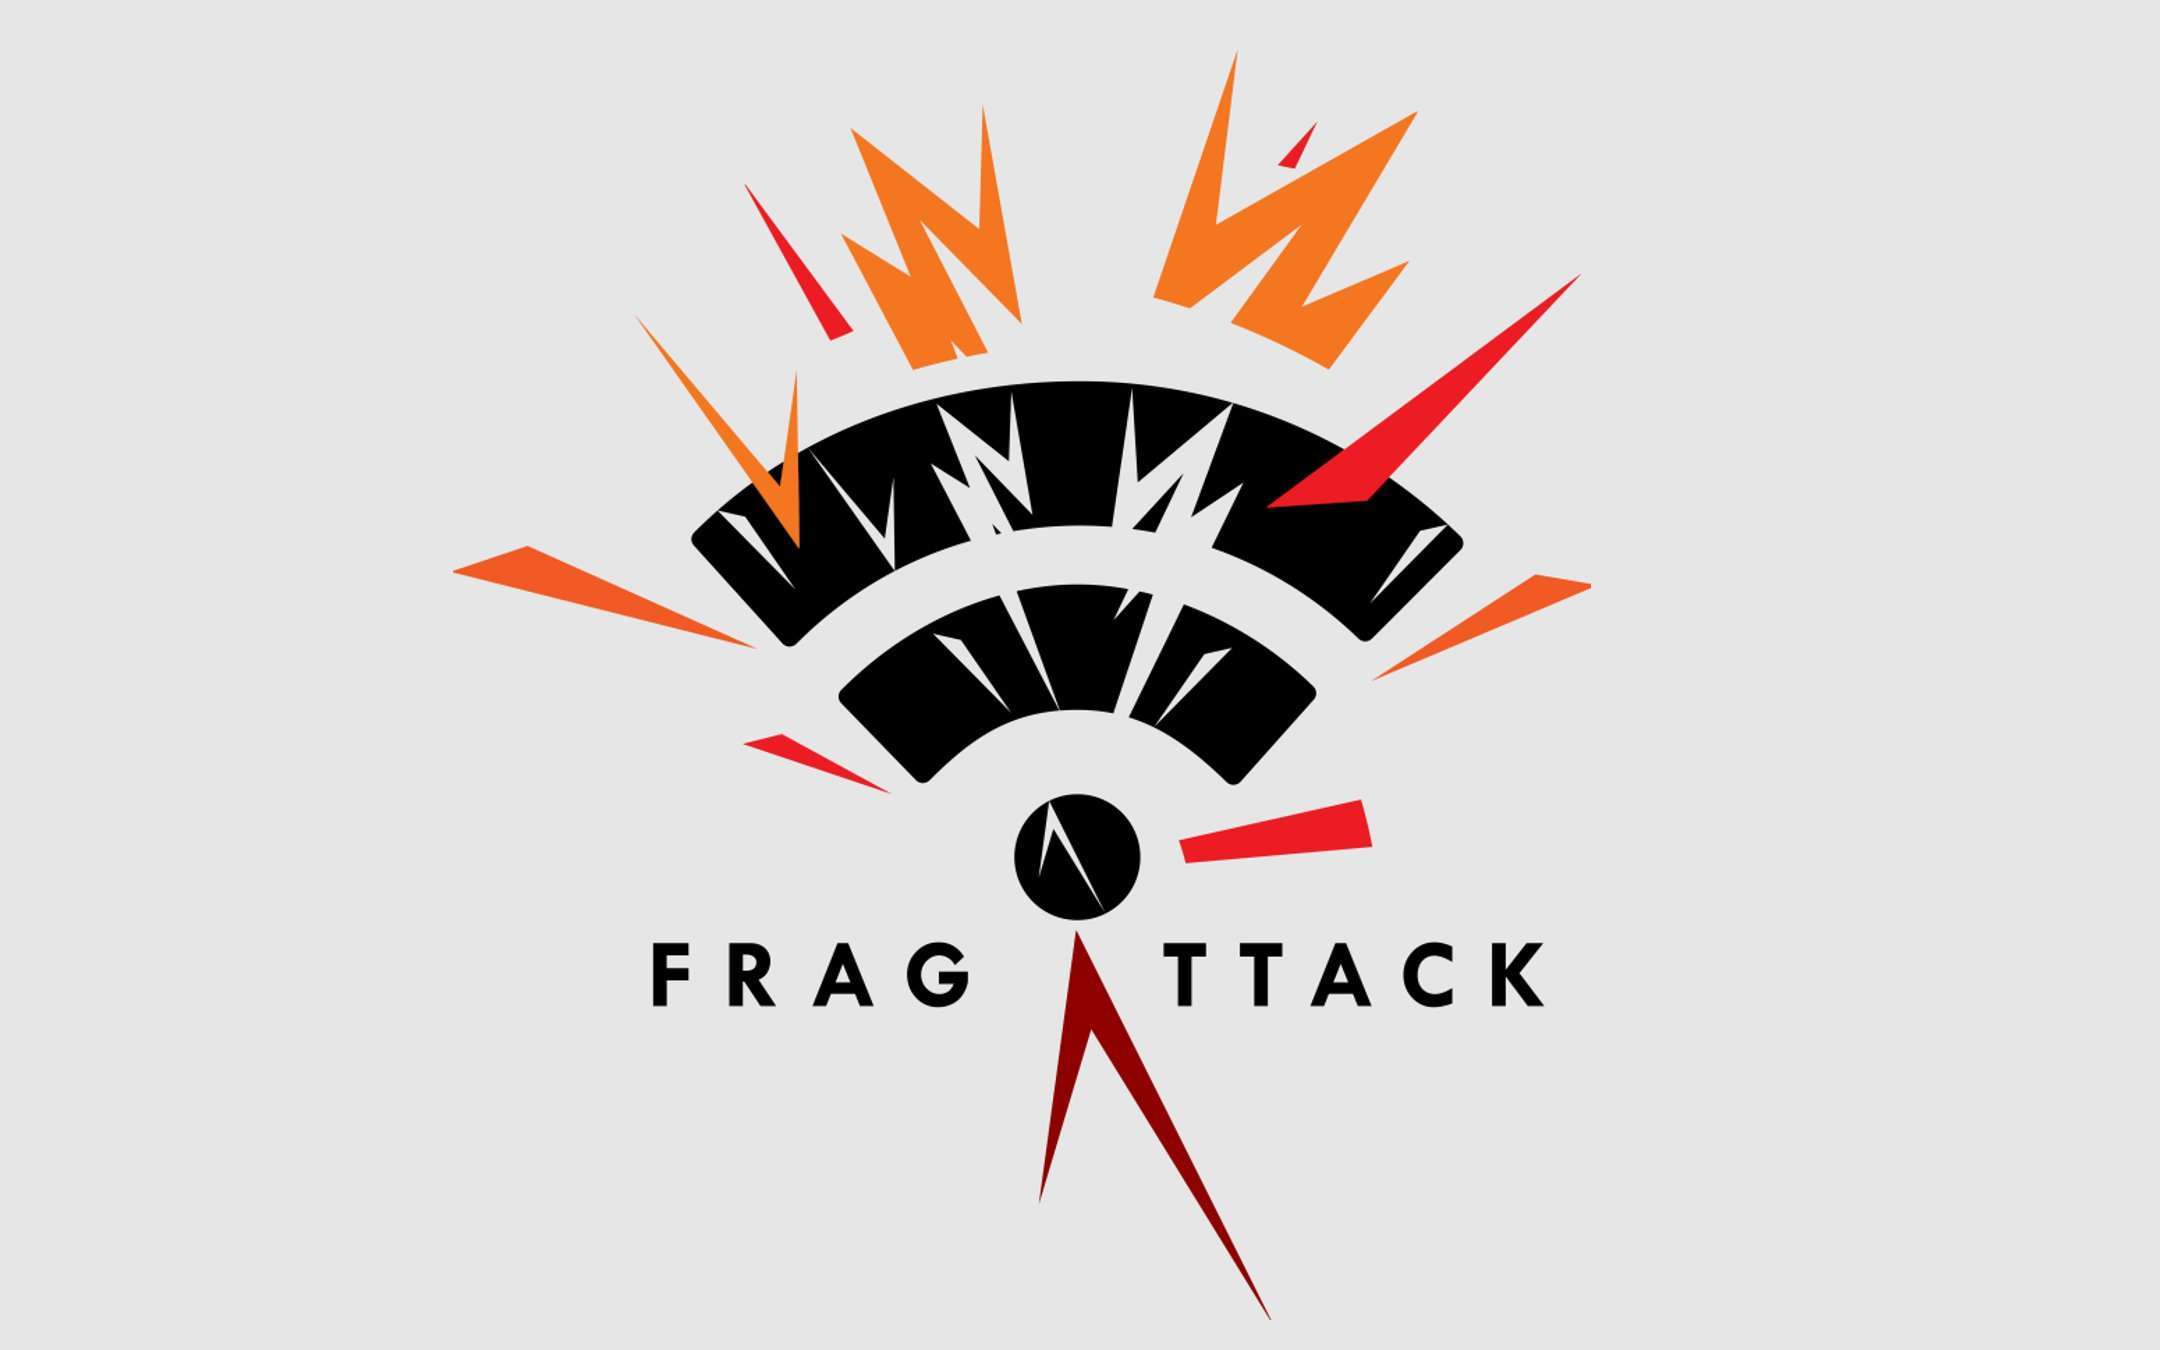 FragAttack, tutti i dispositivi WiFi sono vulnerabili